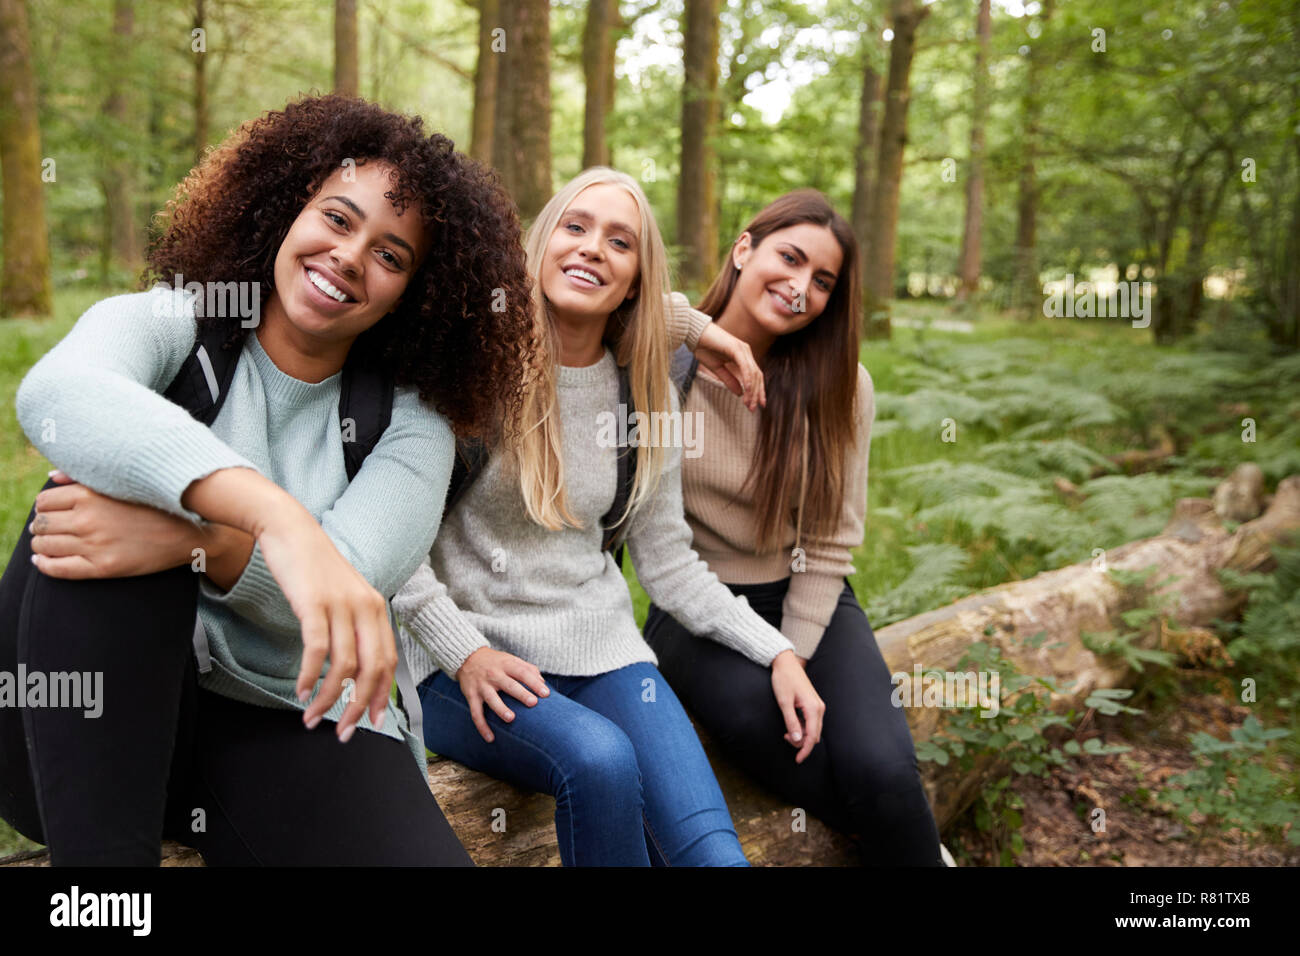 Drei glücklichen jungen erwachsenen Frauen eine Pause machen, sitzt auf einem Baum in einem Wald bei einer Wanderung, Porträt Stockfoto